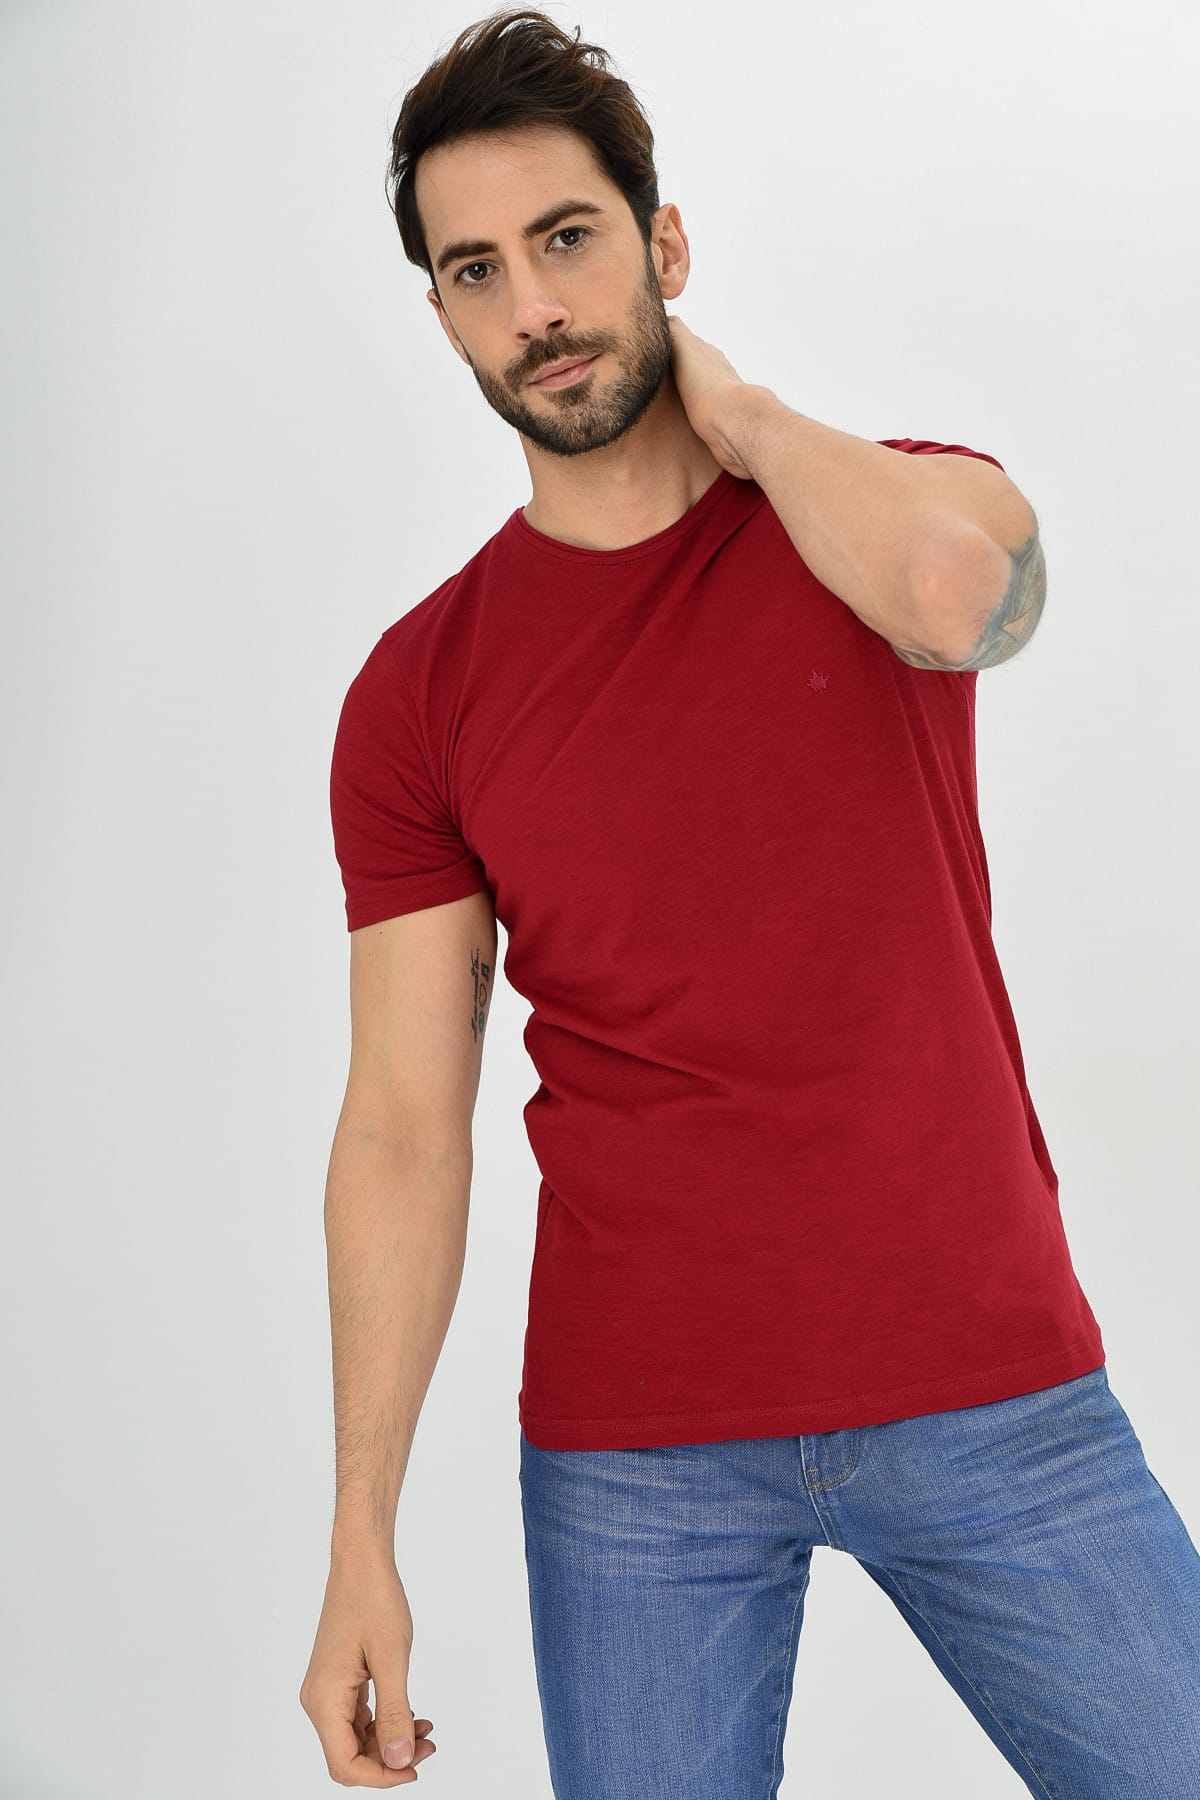 DYNAMO T-Shirt Bordeaux Slim Fit AR6247